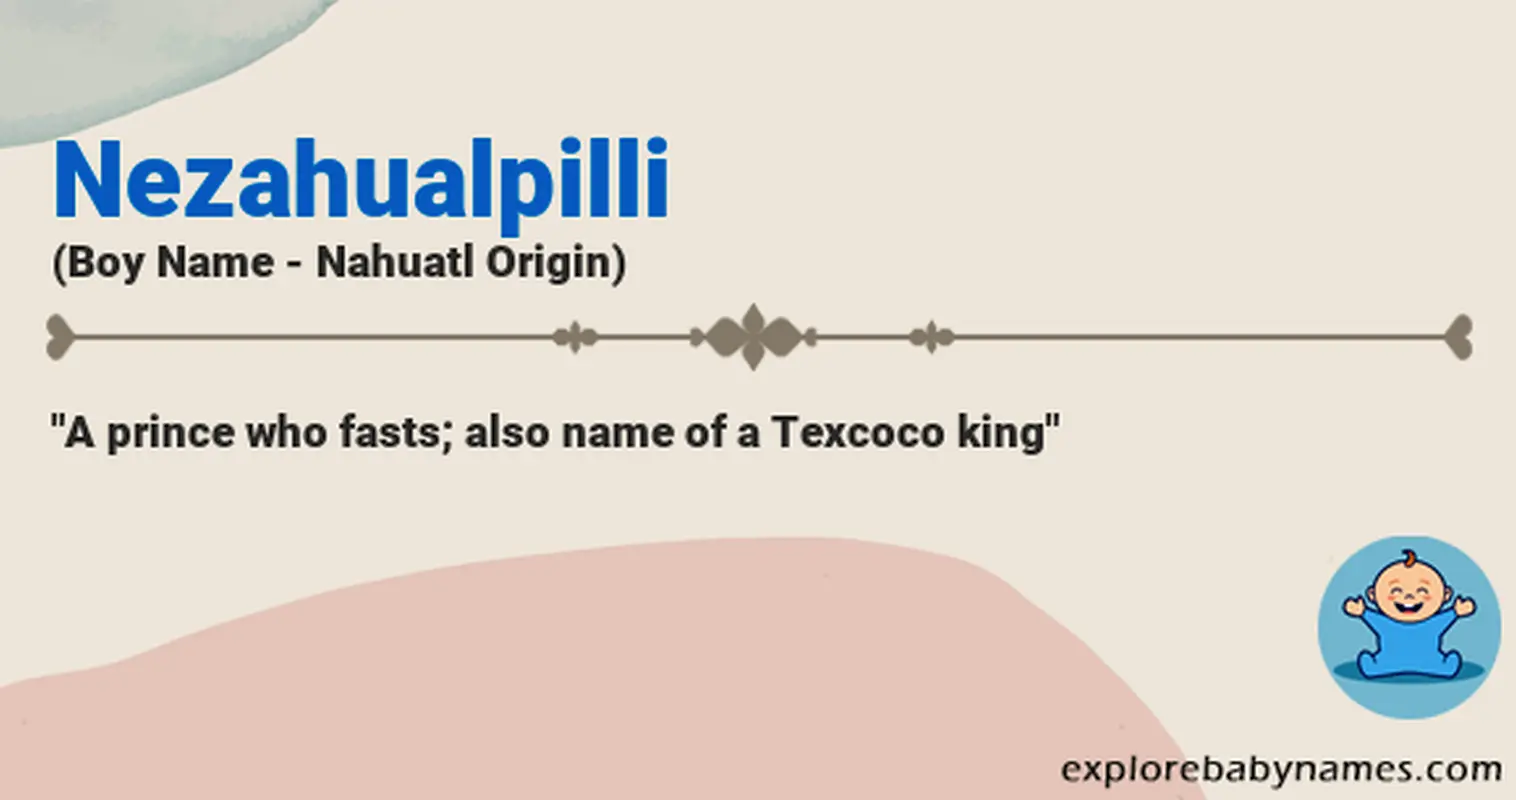 Meaning of Nezahualpilli